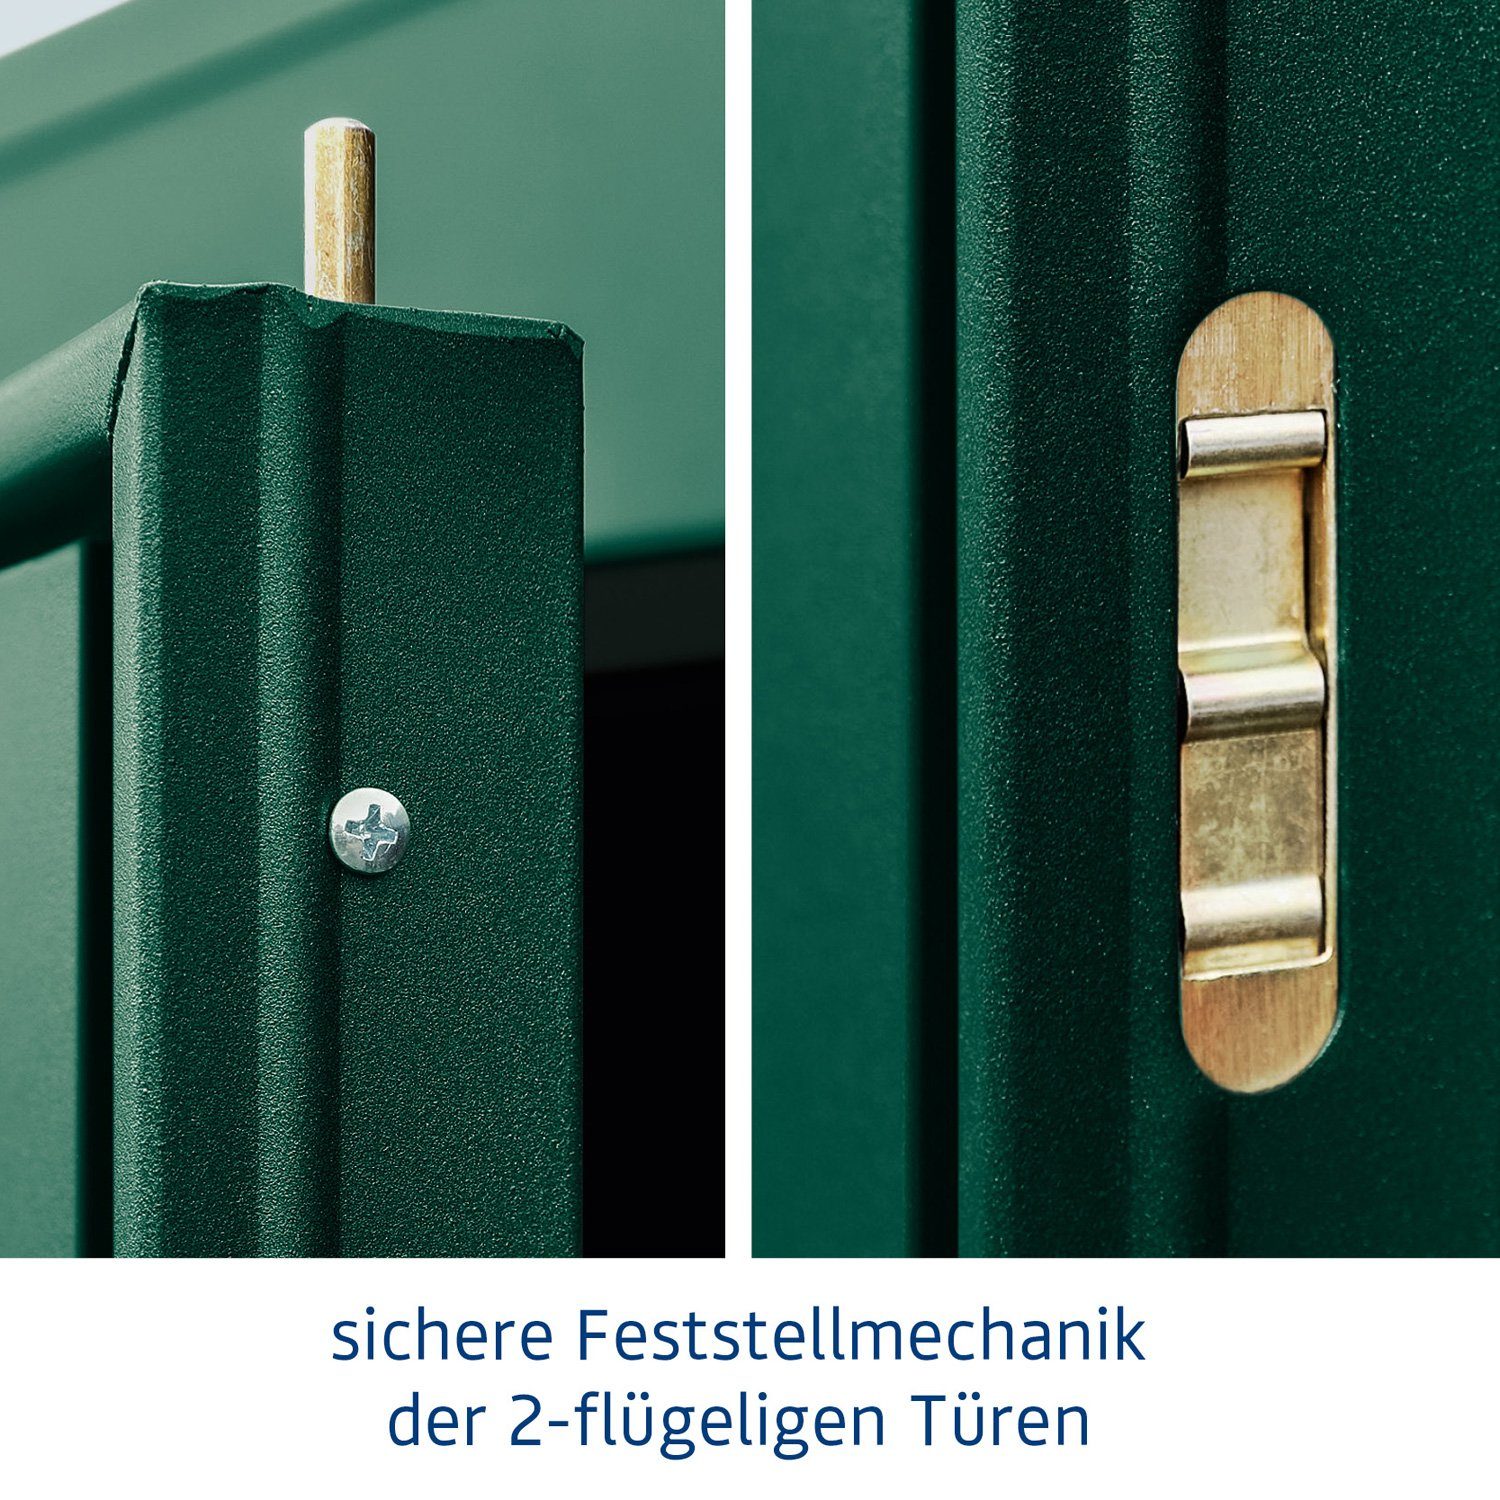 Metall-Gerätehaus Ecostar Trend 2-flüglige mit 3, Hörmann Typ Tür Gerätehaus moosgrün Pultdach